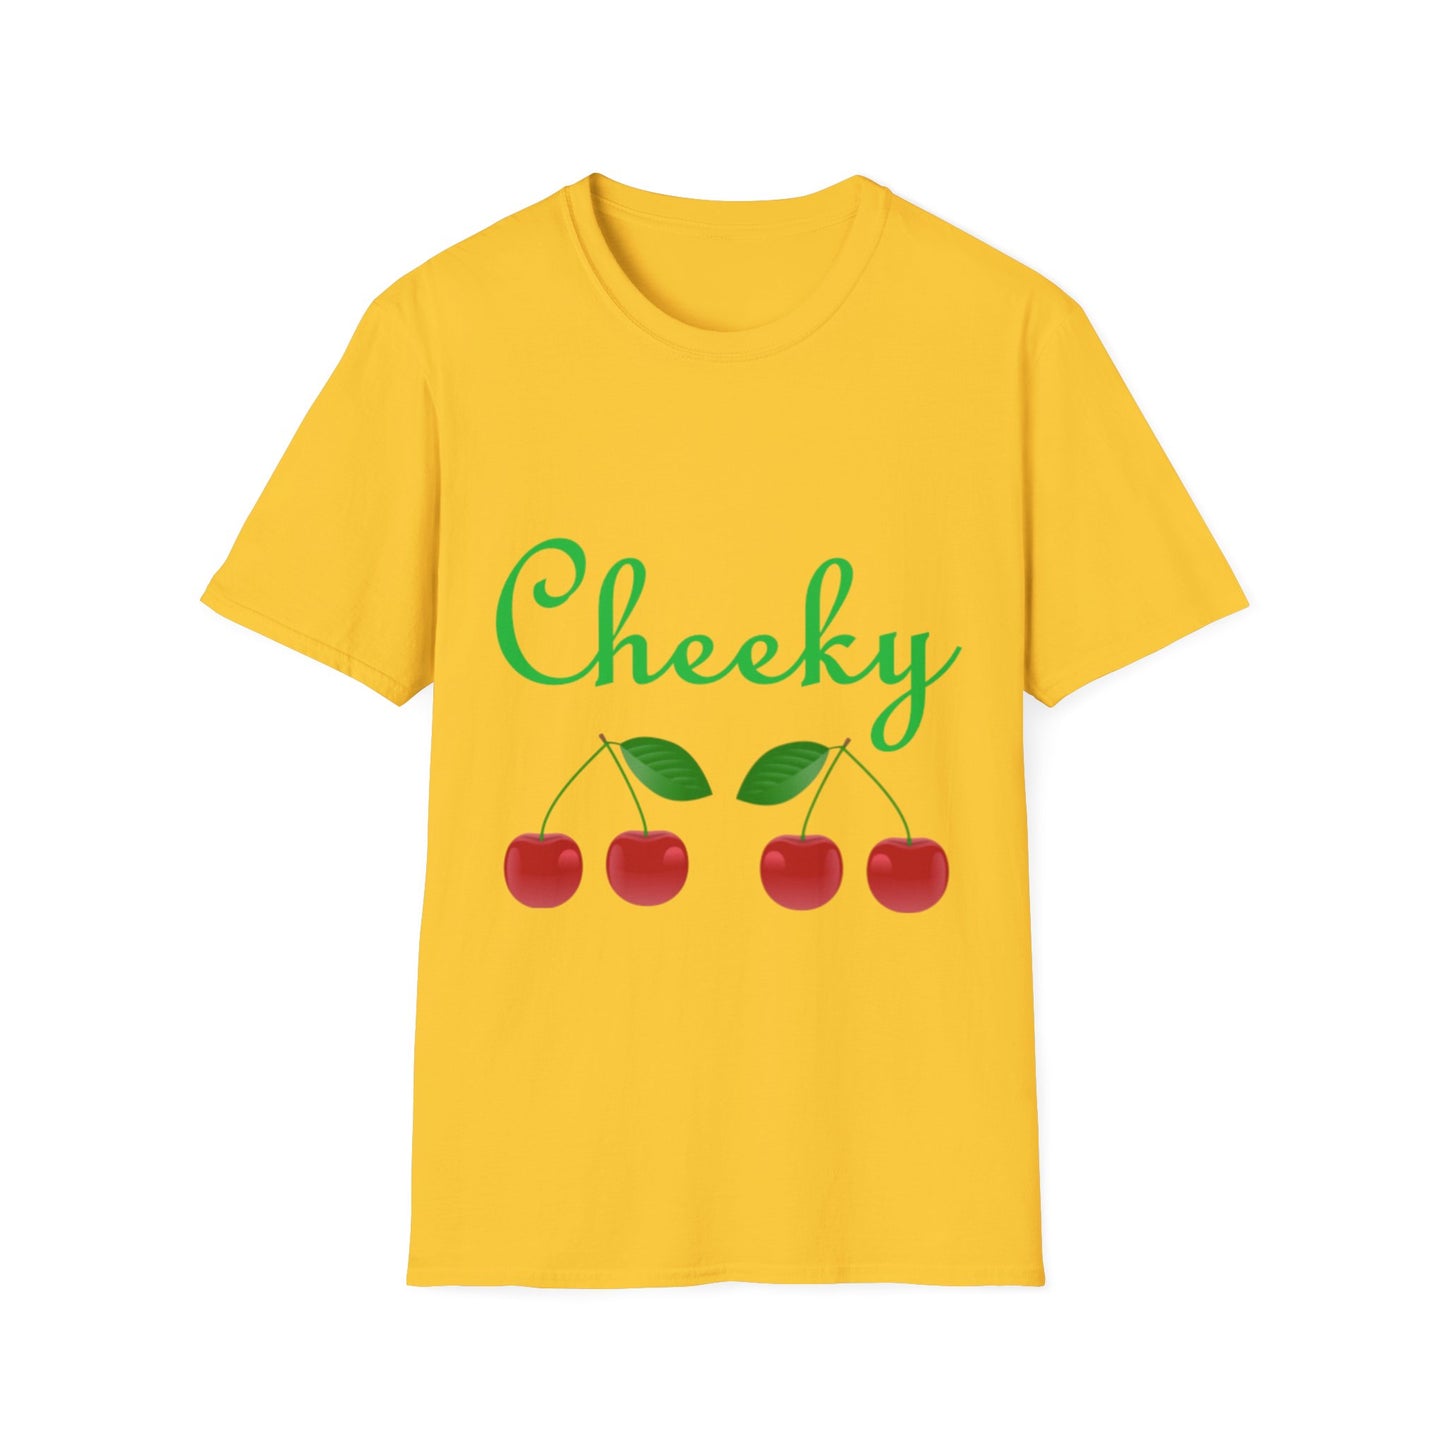 Cheeky Cherries Fruit Summer T-Shirt